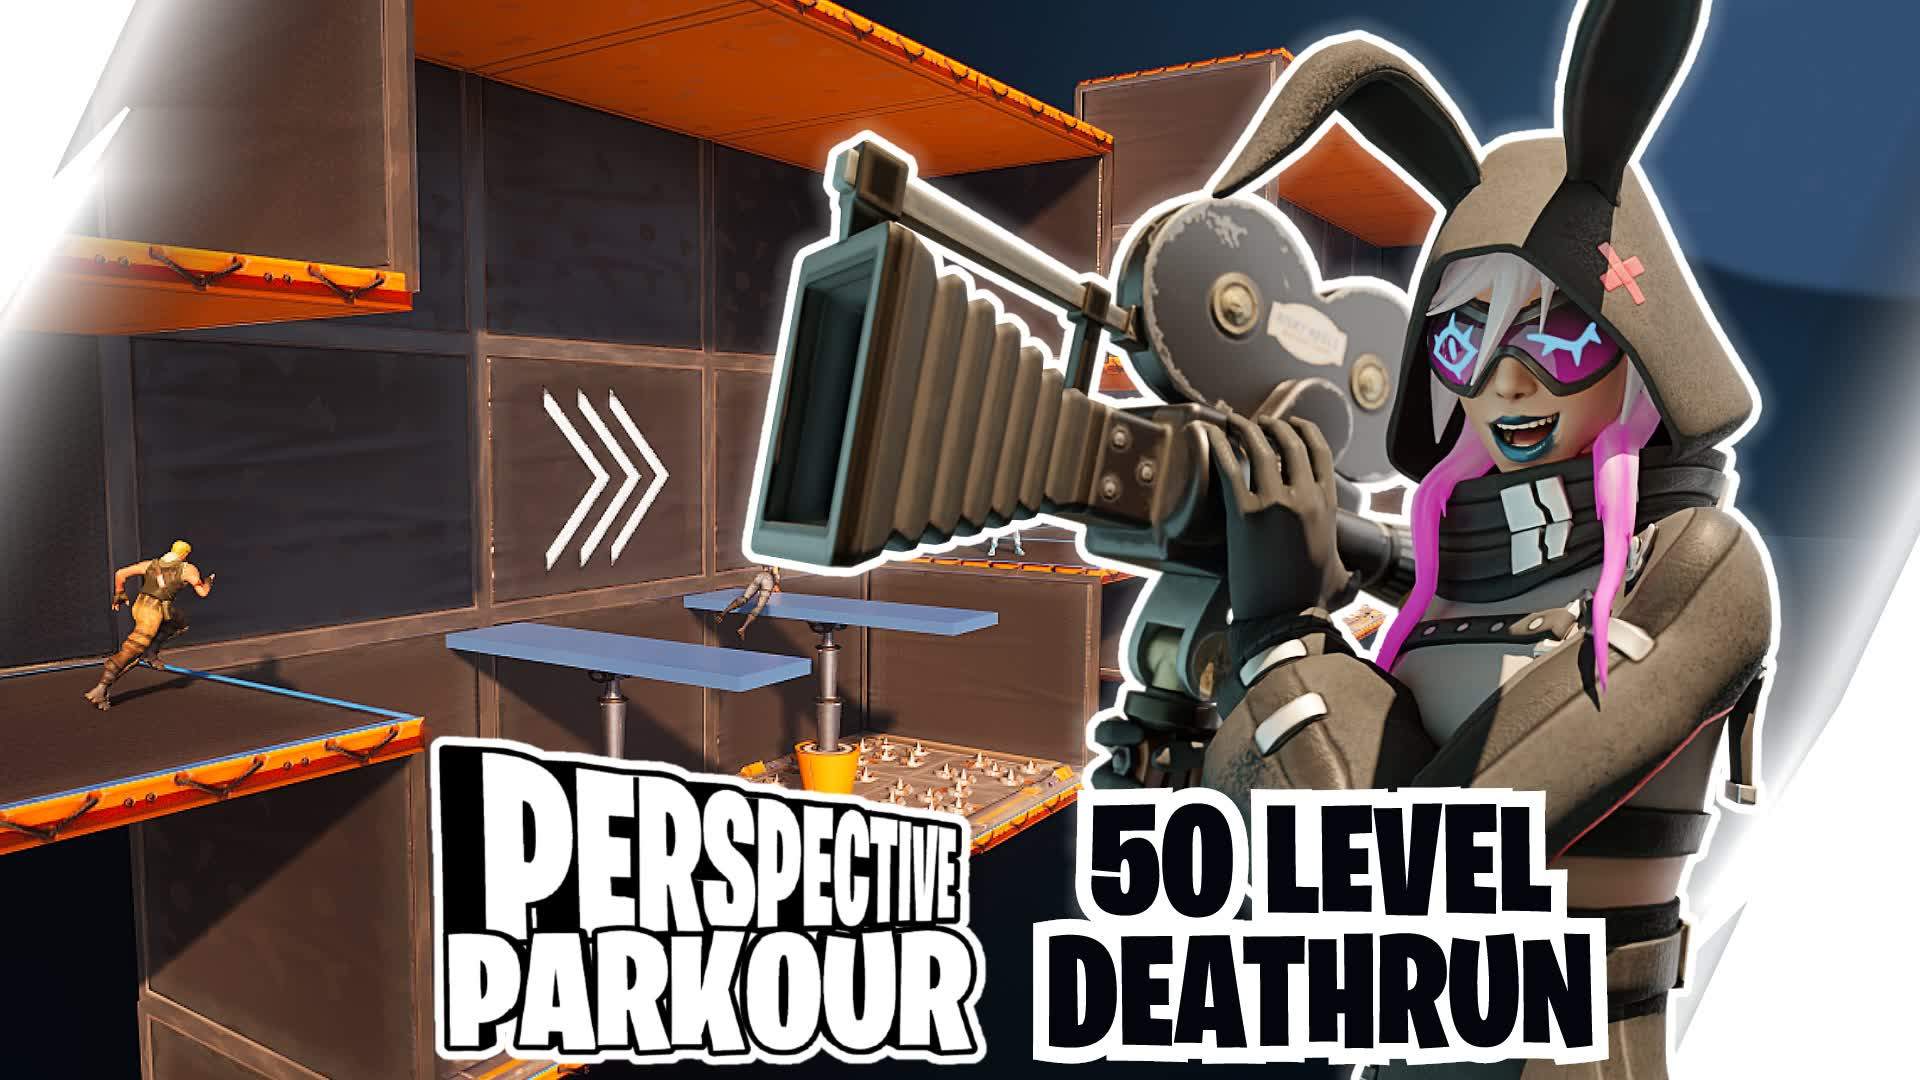 Perspective Parkour | 50 Level Deathrun